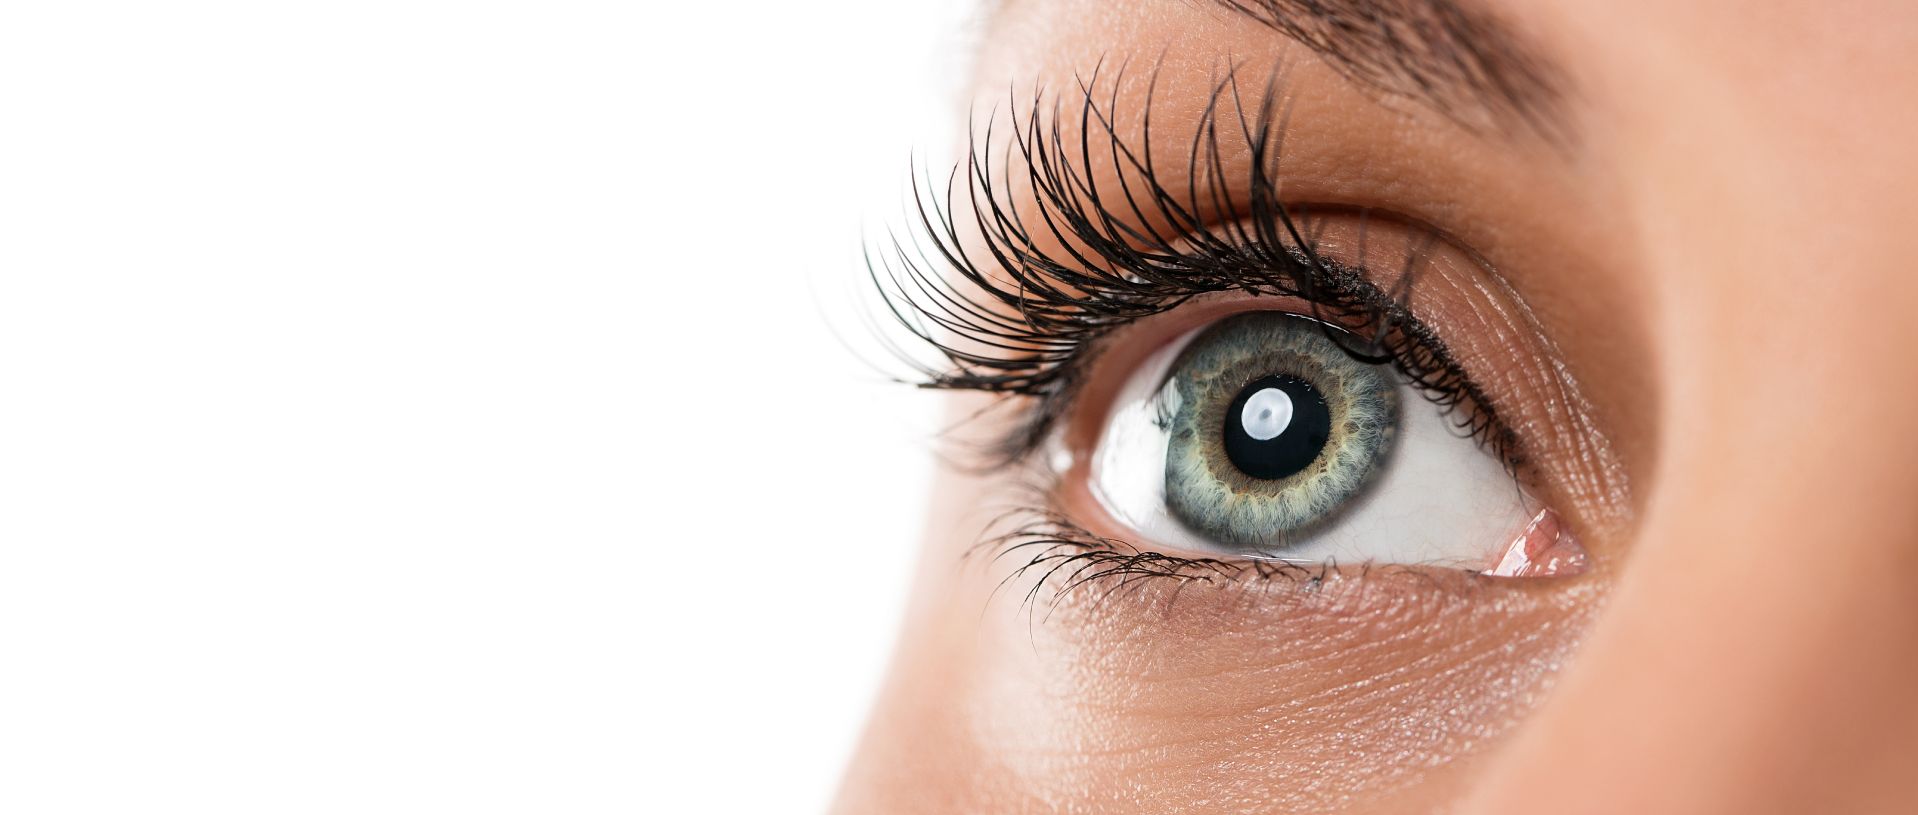 ojo femenino natural | cirugia plastica de ojos y cejas